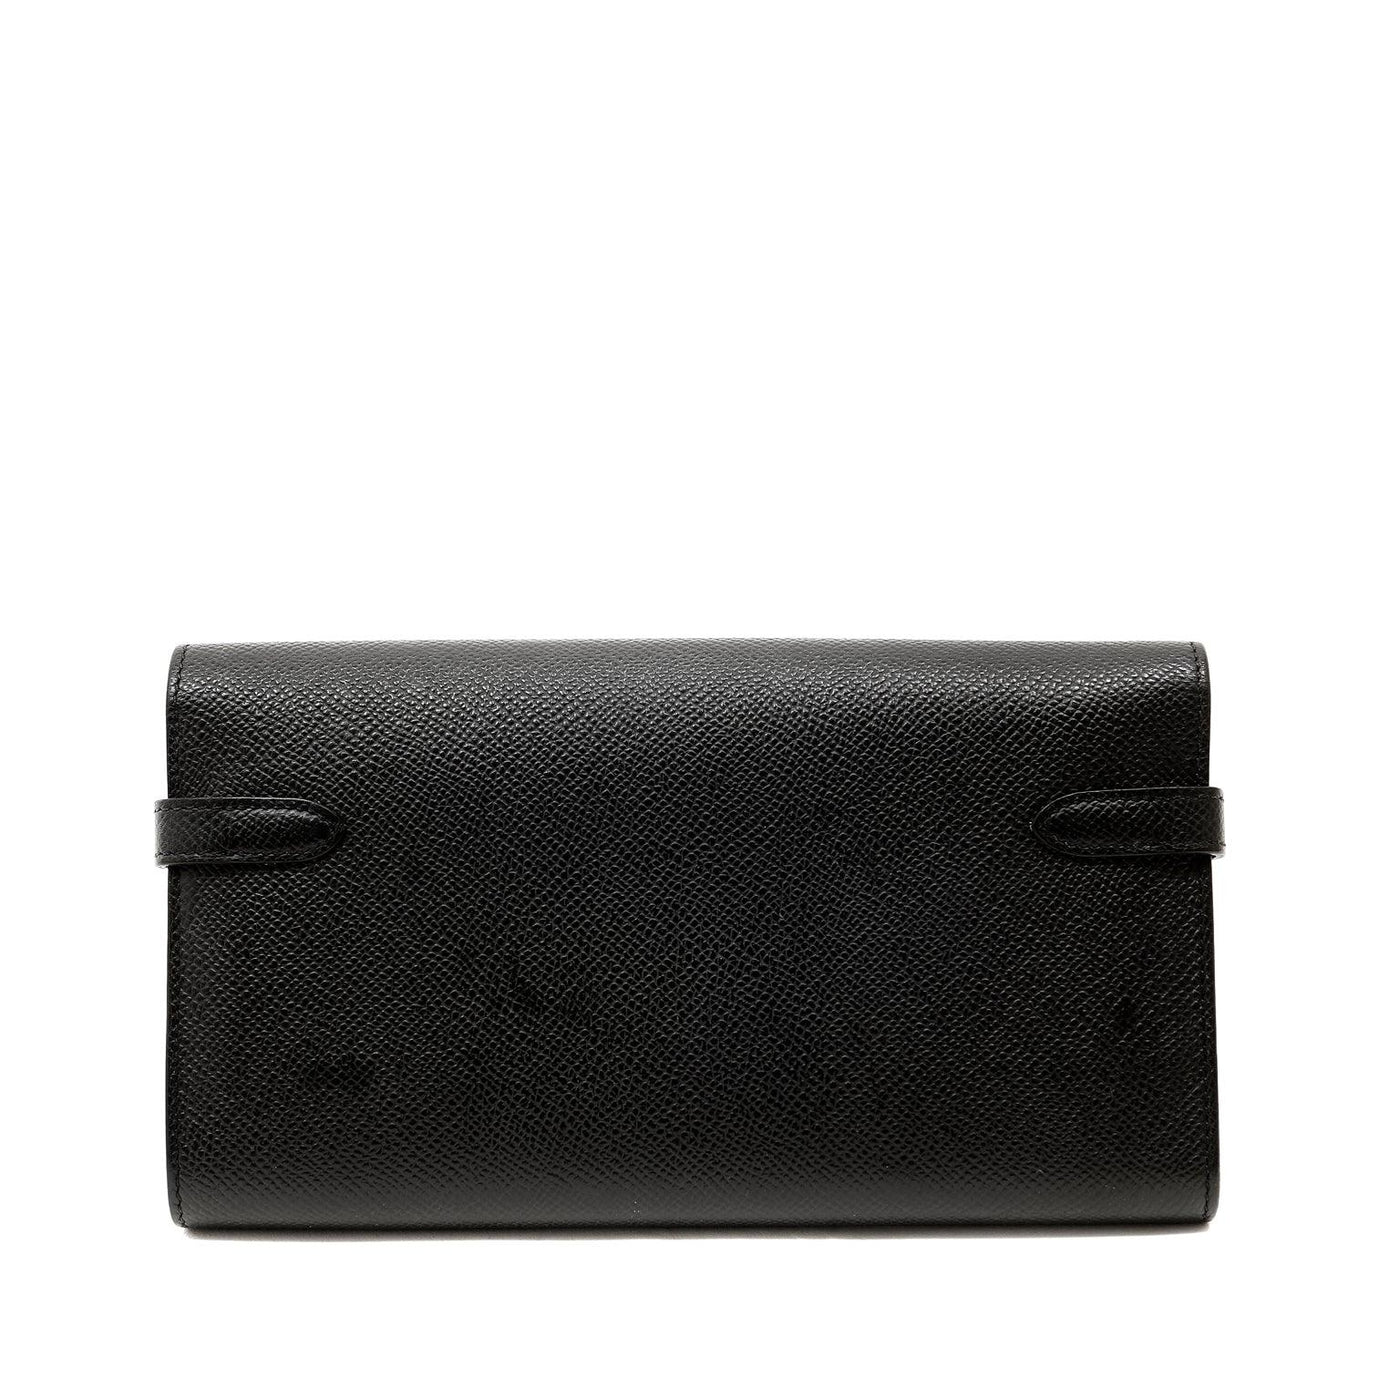 Hermes Black  Wallet w/ Palladium Hardware - Only Authentics